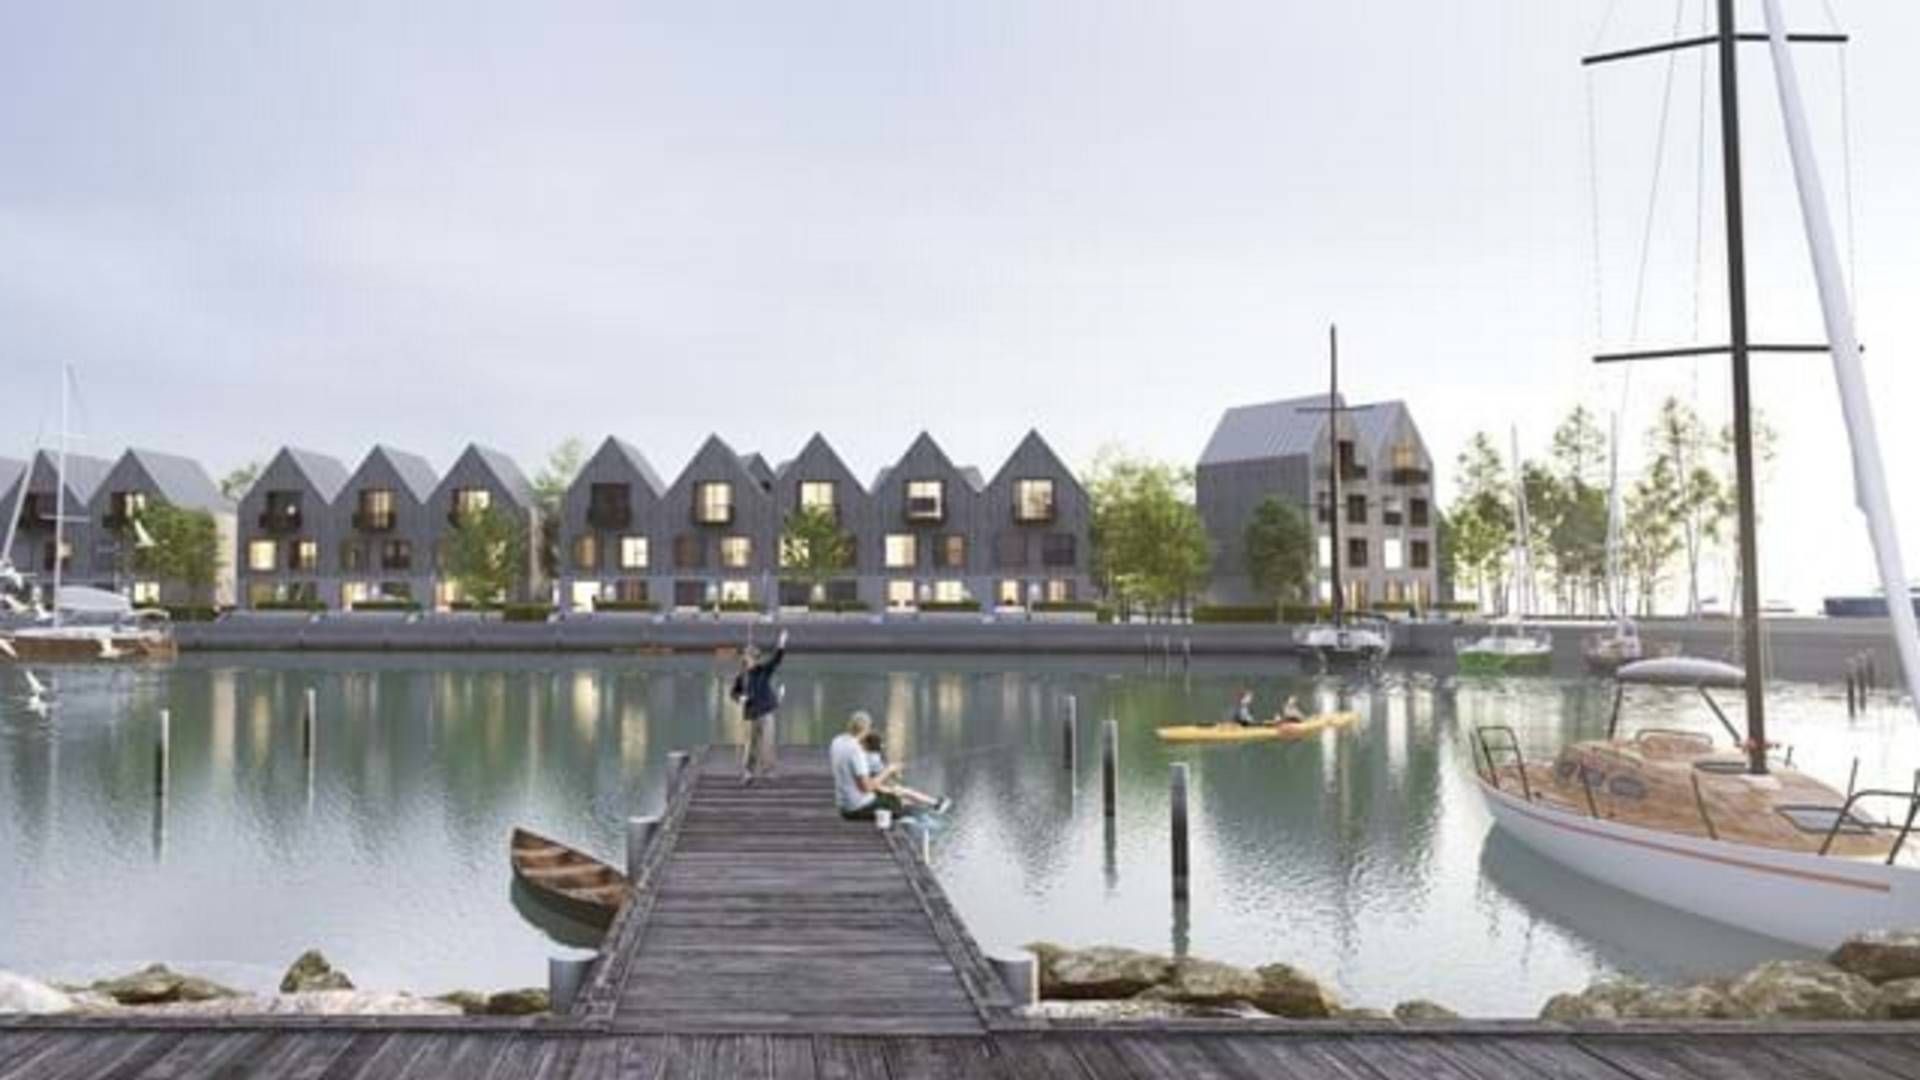 Den aarhusianske ejendomsudvikler Domis skal stå for byggeriet af den nye havnebydel Færgebyen i Hou. | Foto: Visualisering / Flæks Arkitekter